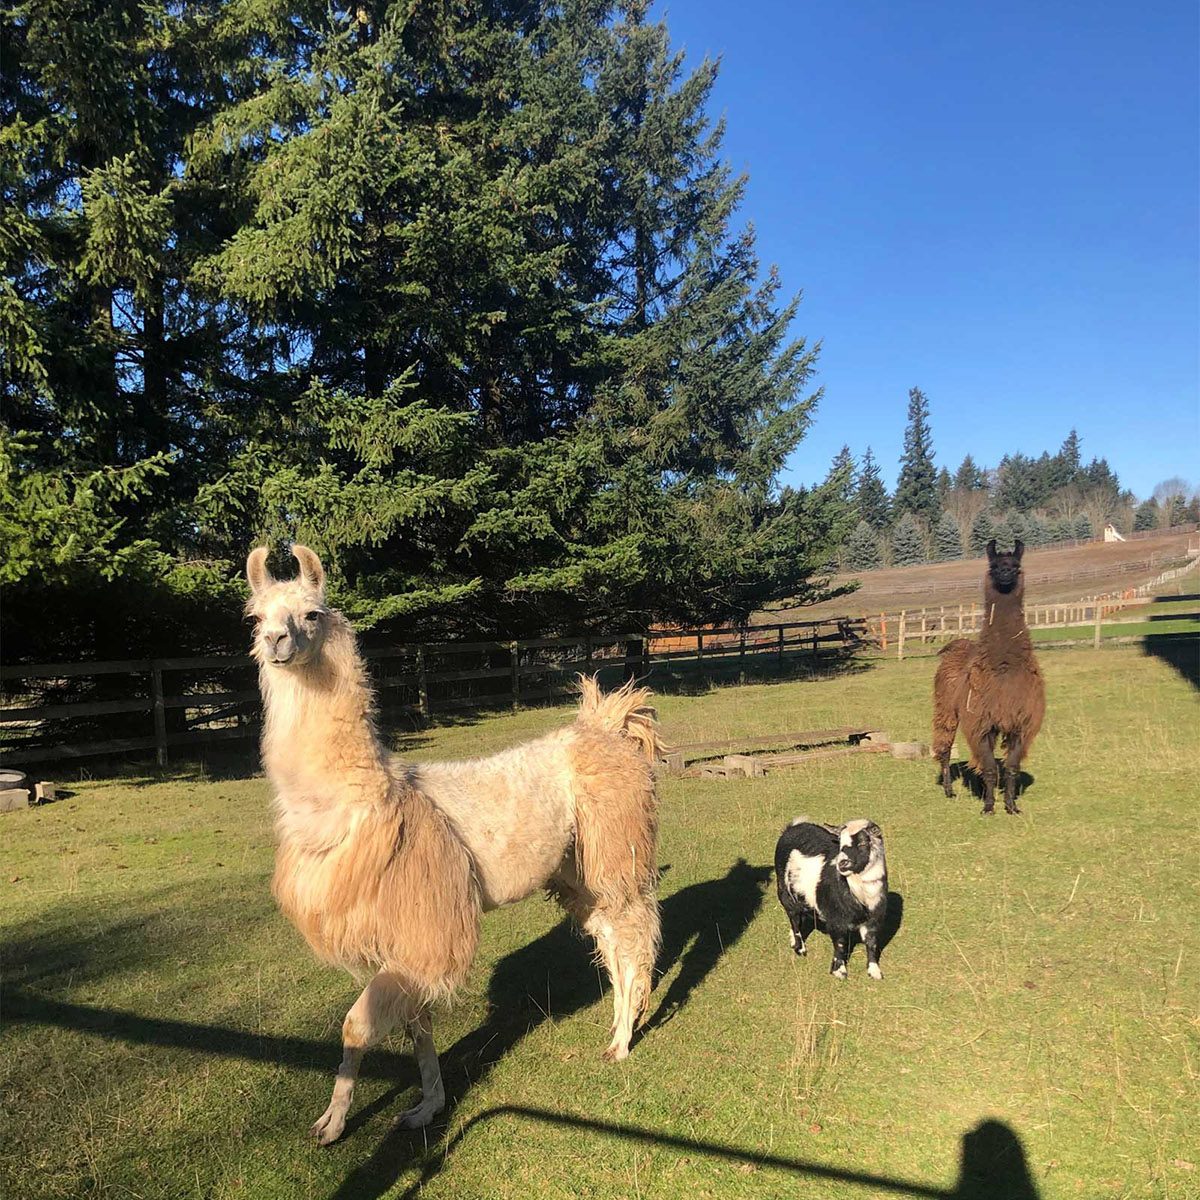 llamas on a farm